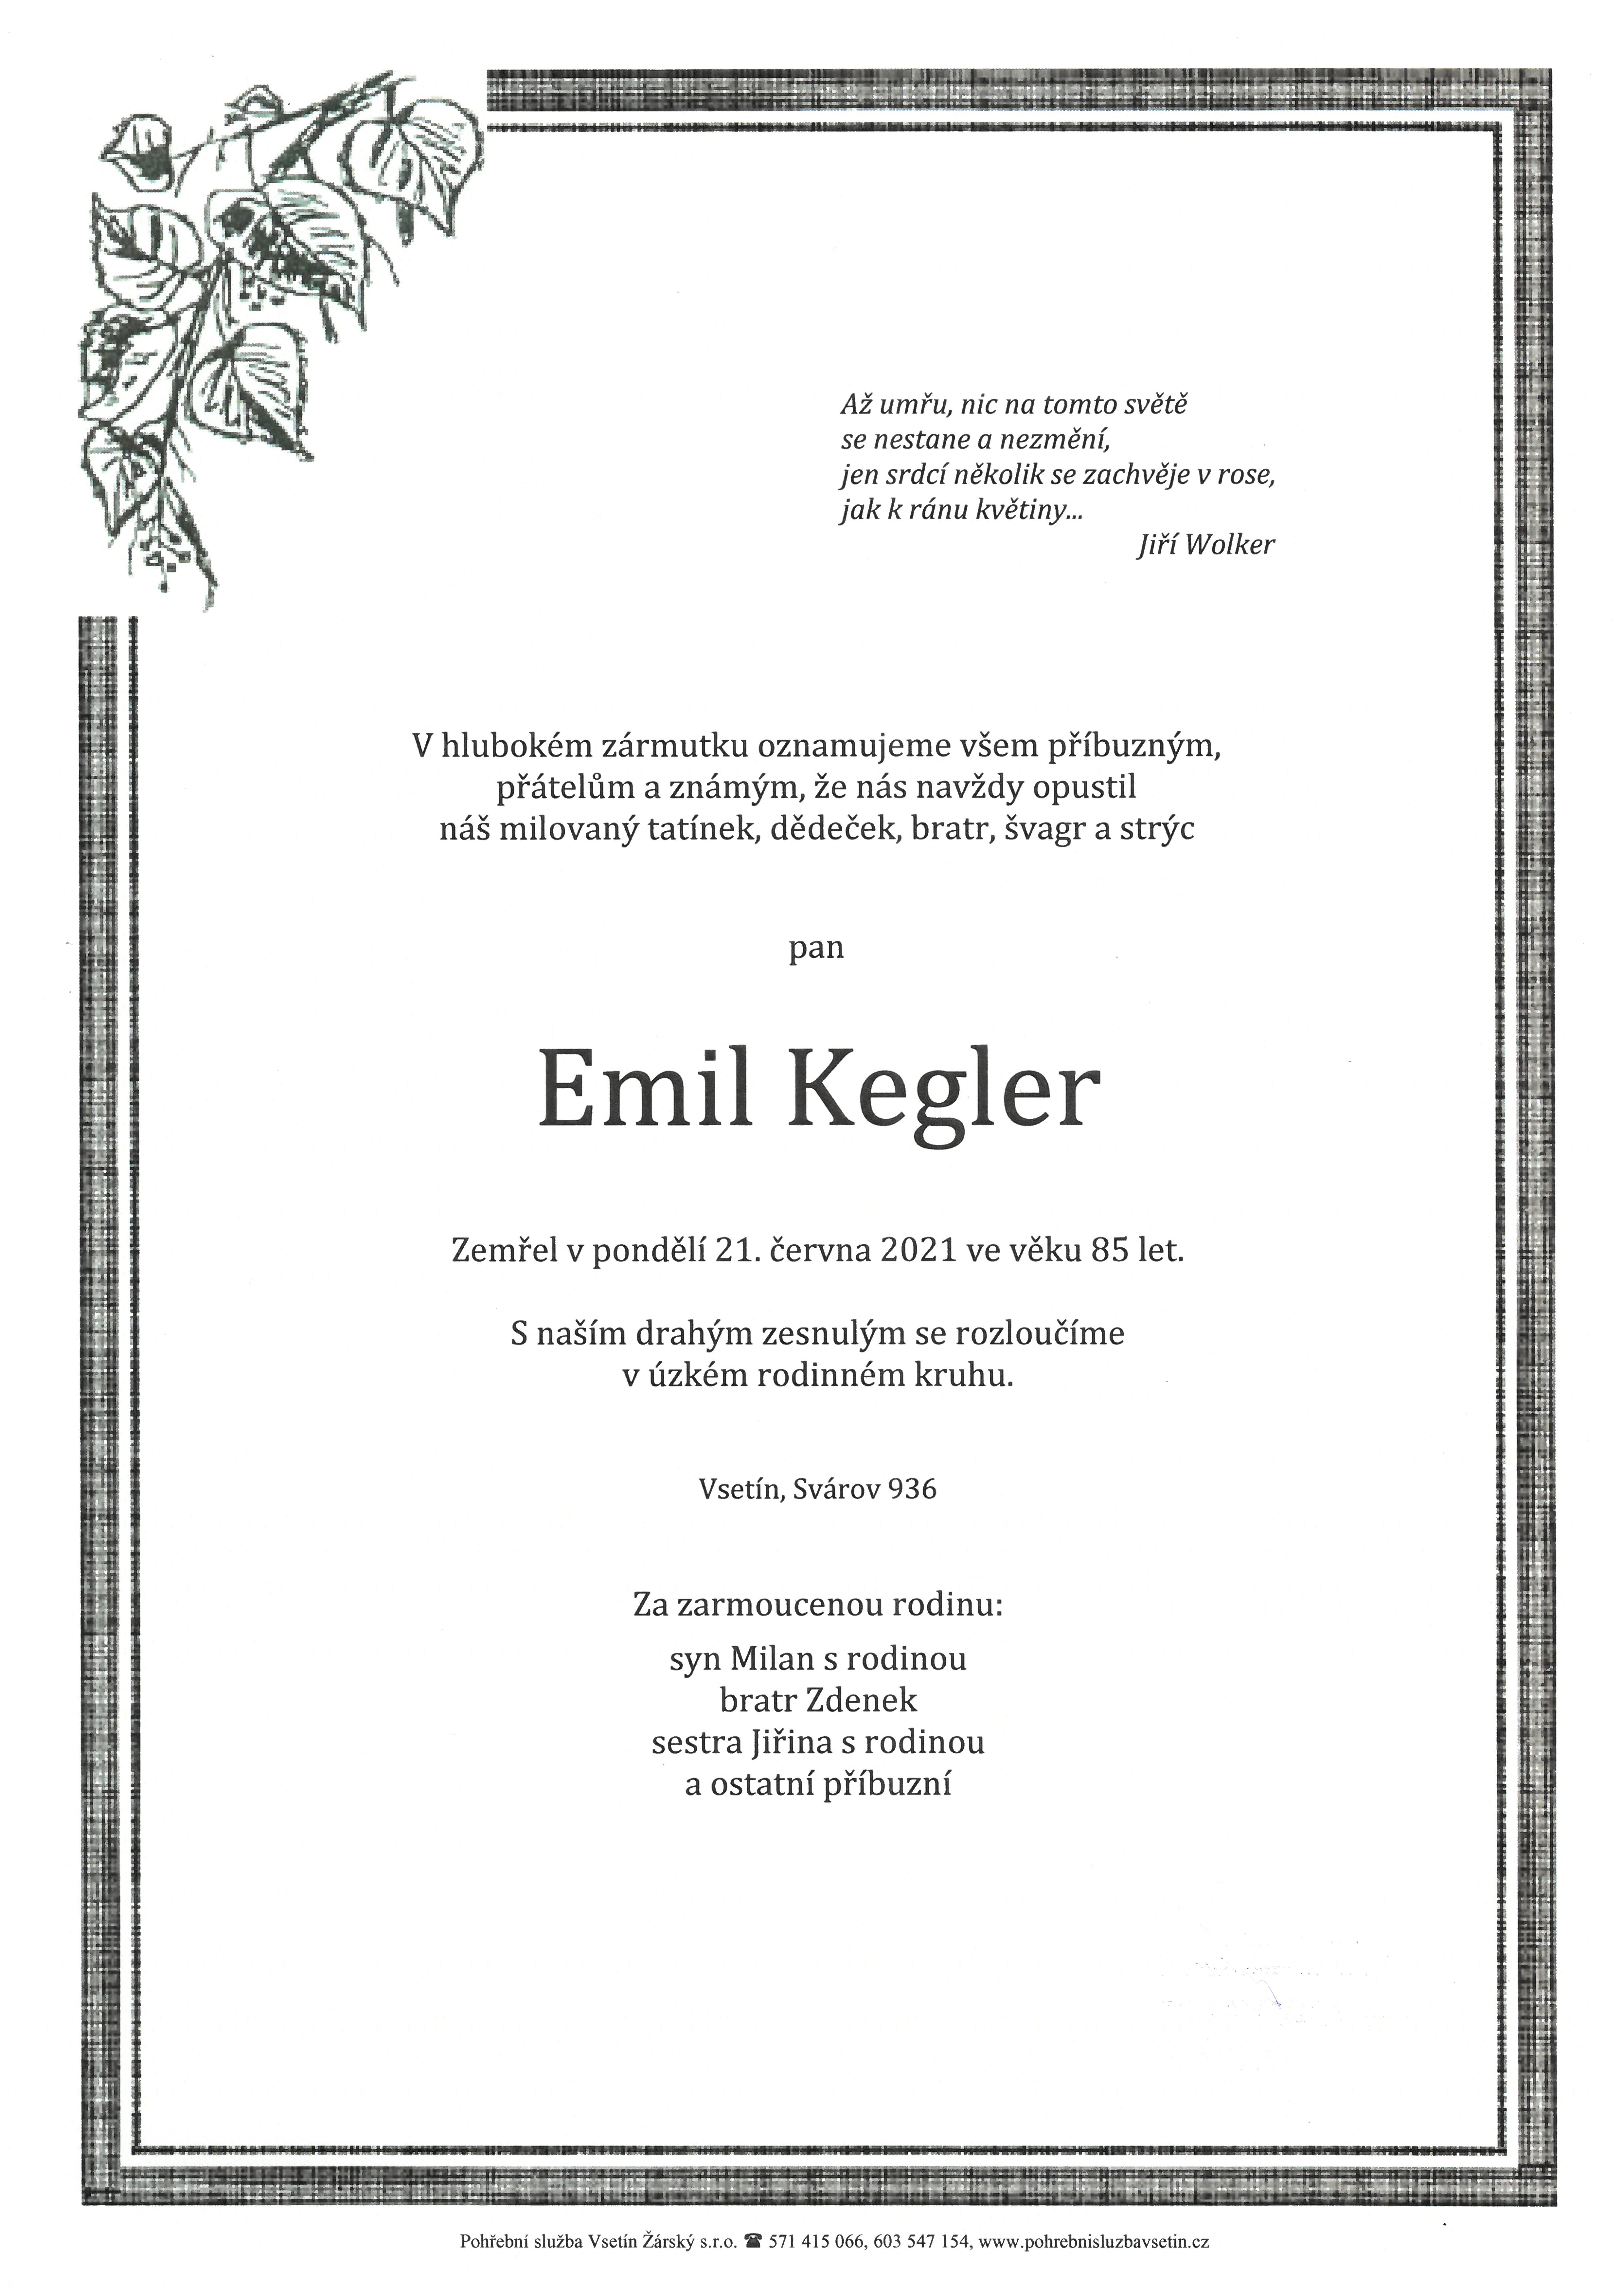 Emil Kegler